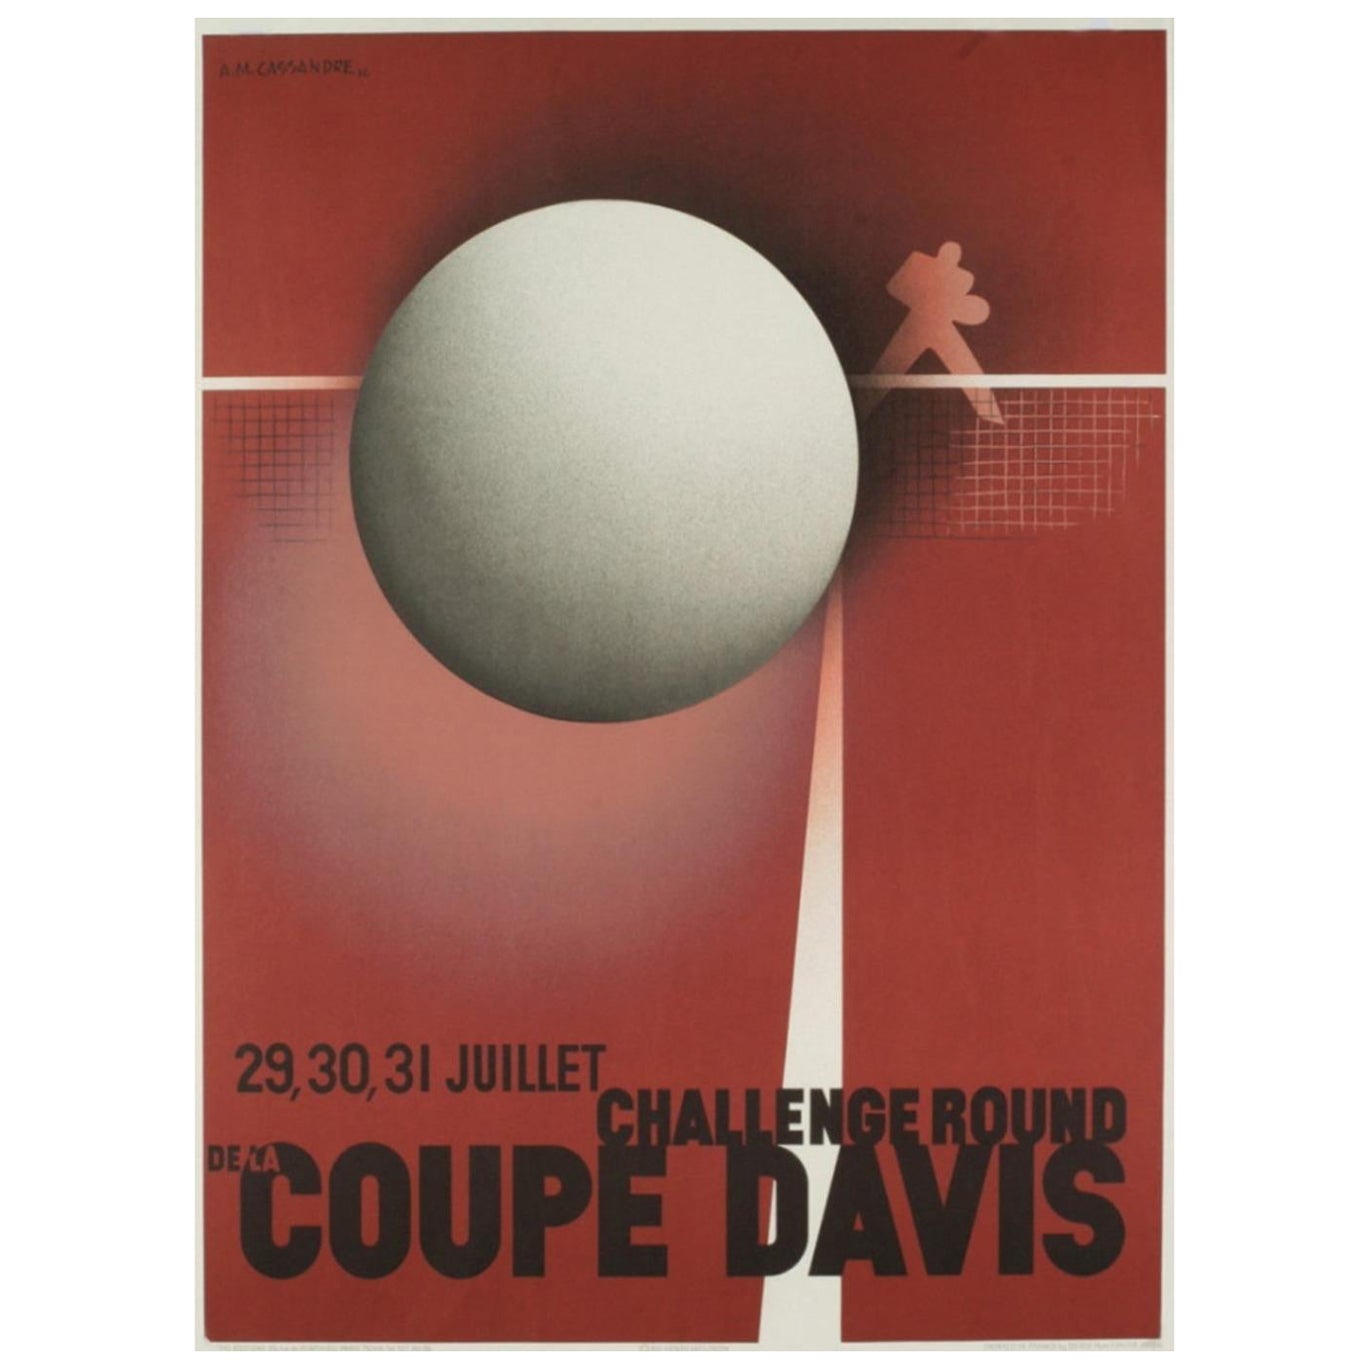 1980 Coupe Davis - A&M. Affiche vintage d'origine Cassandre